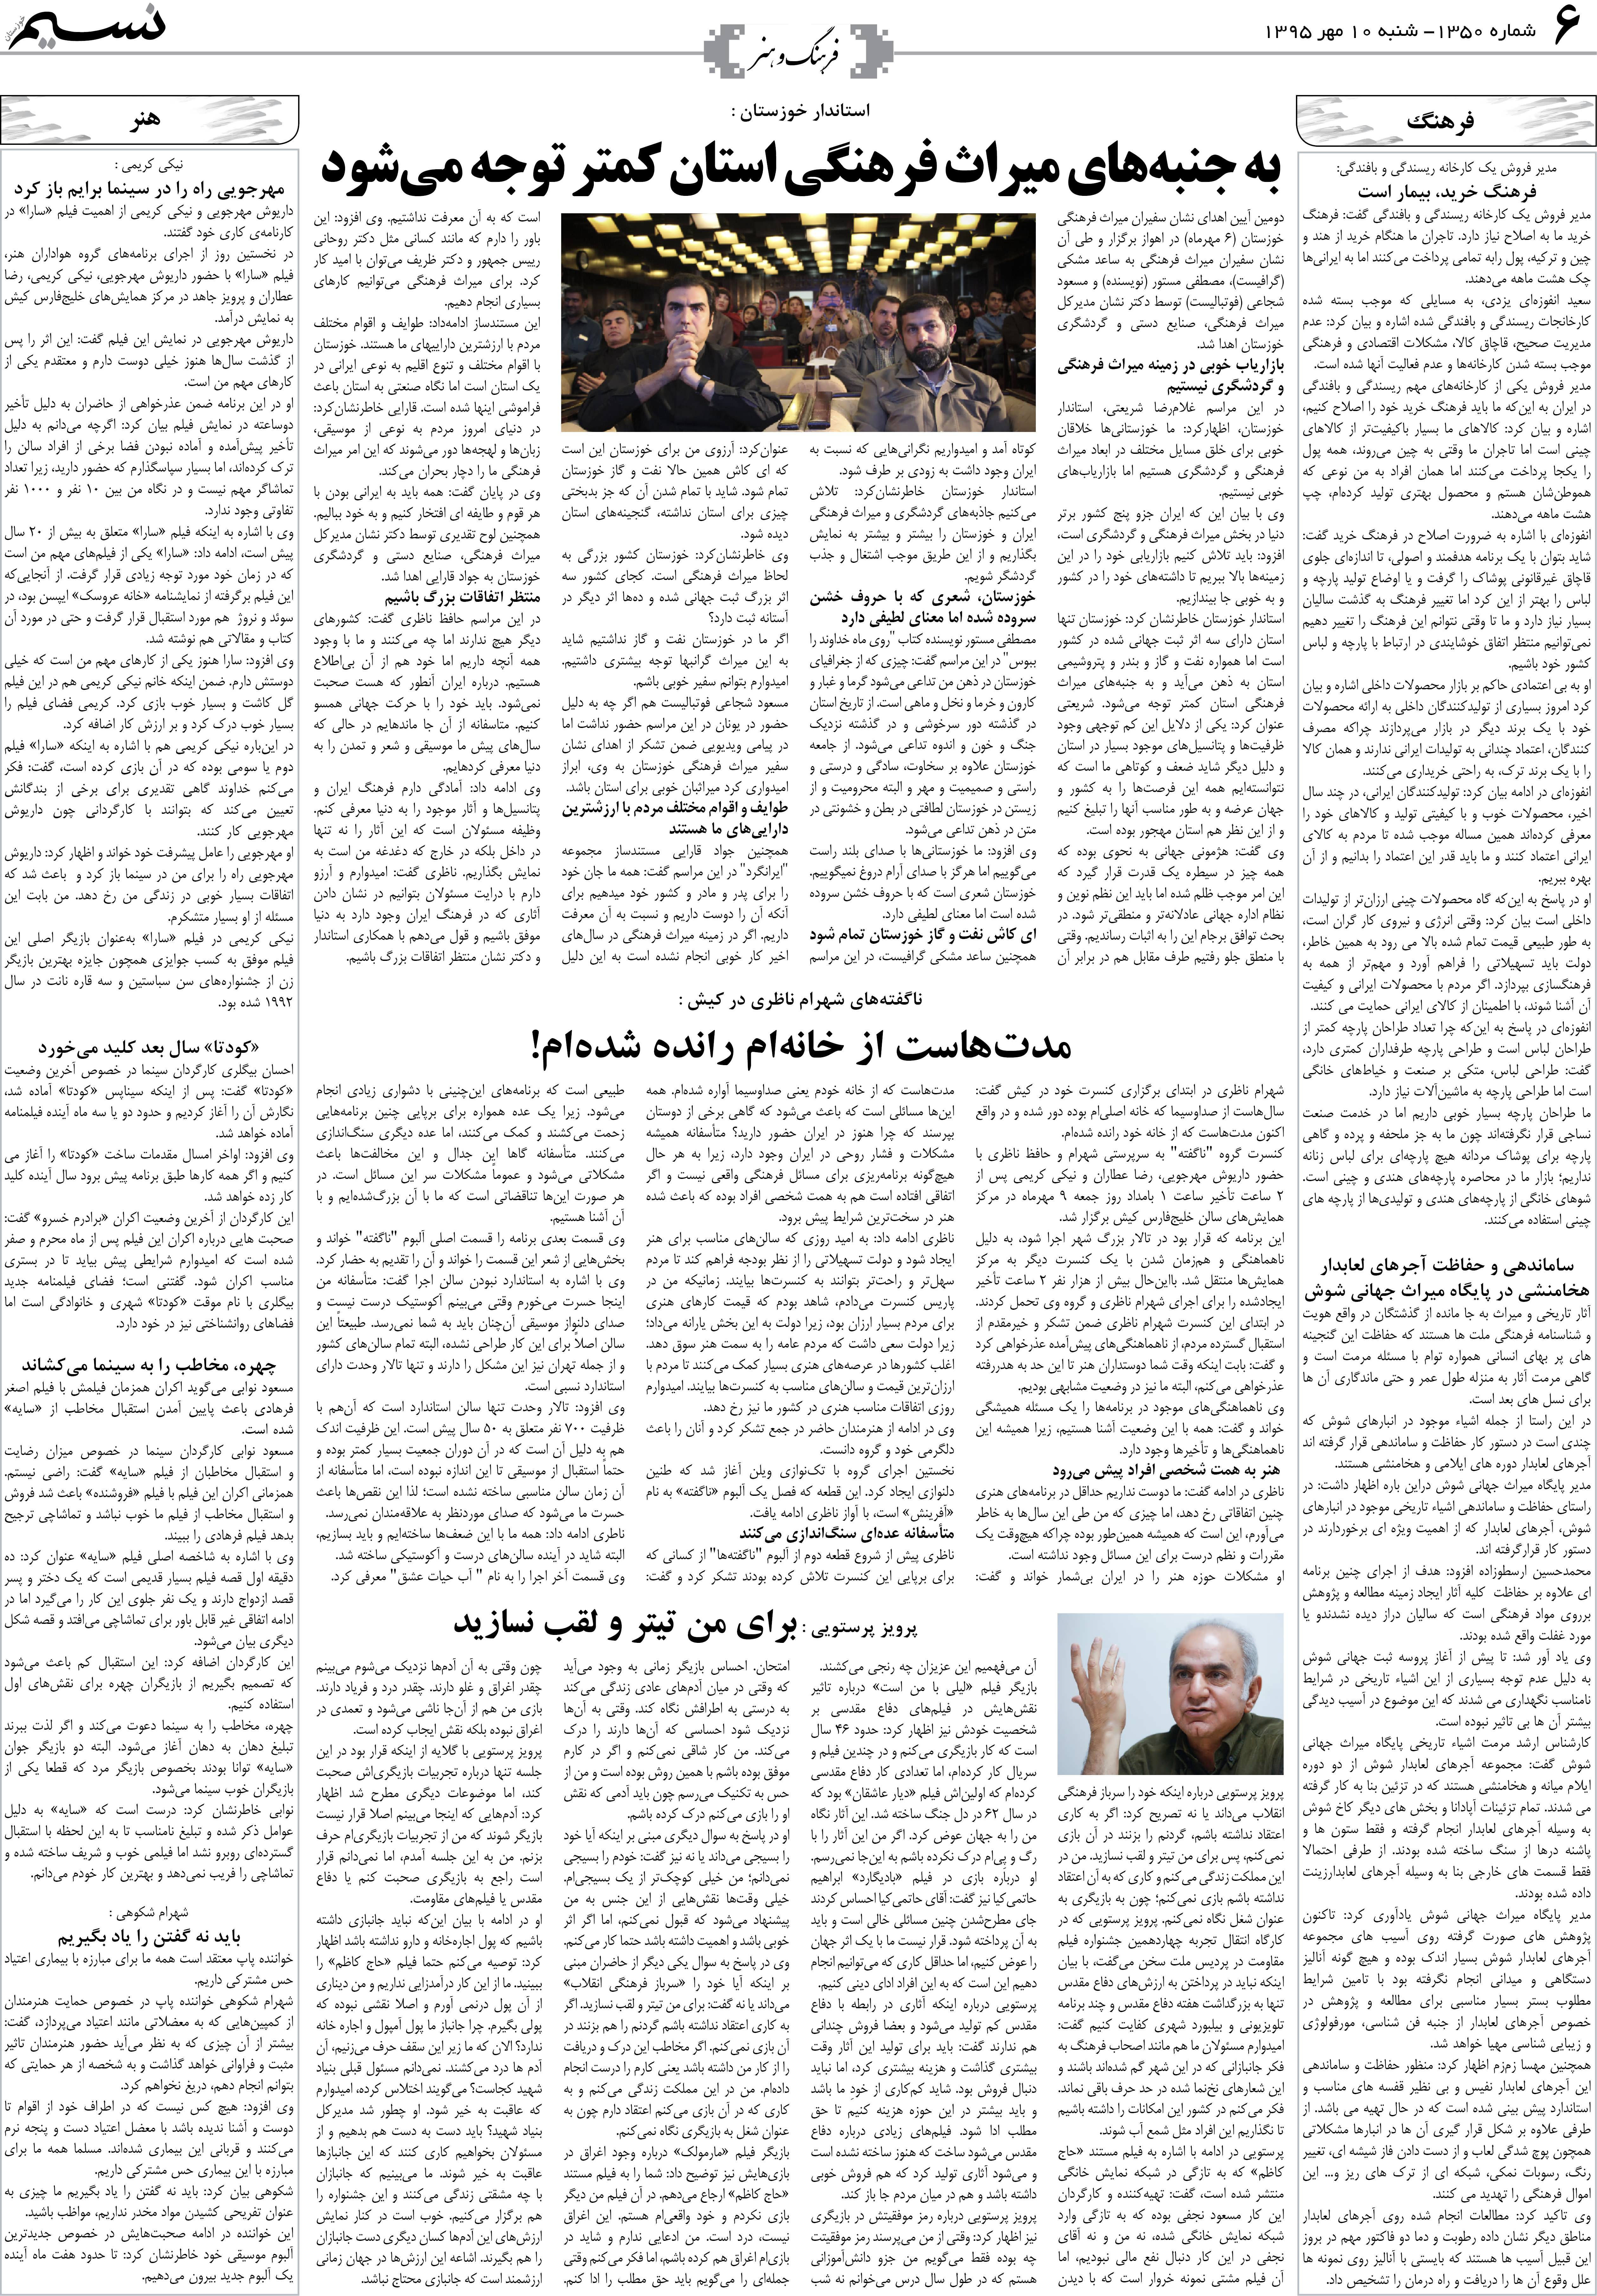 صفحه فرهنگ و هنر روزنامه نسیم شماره 1350